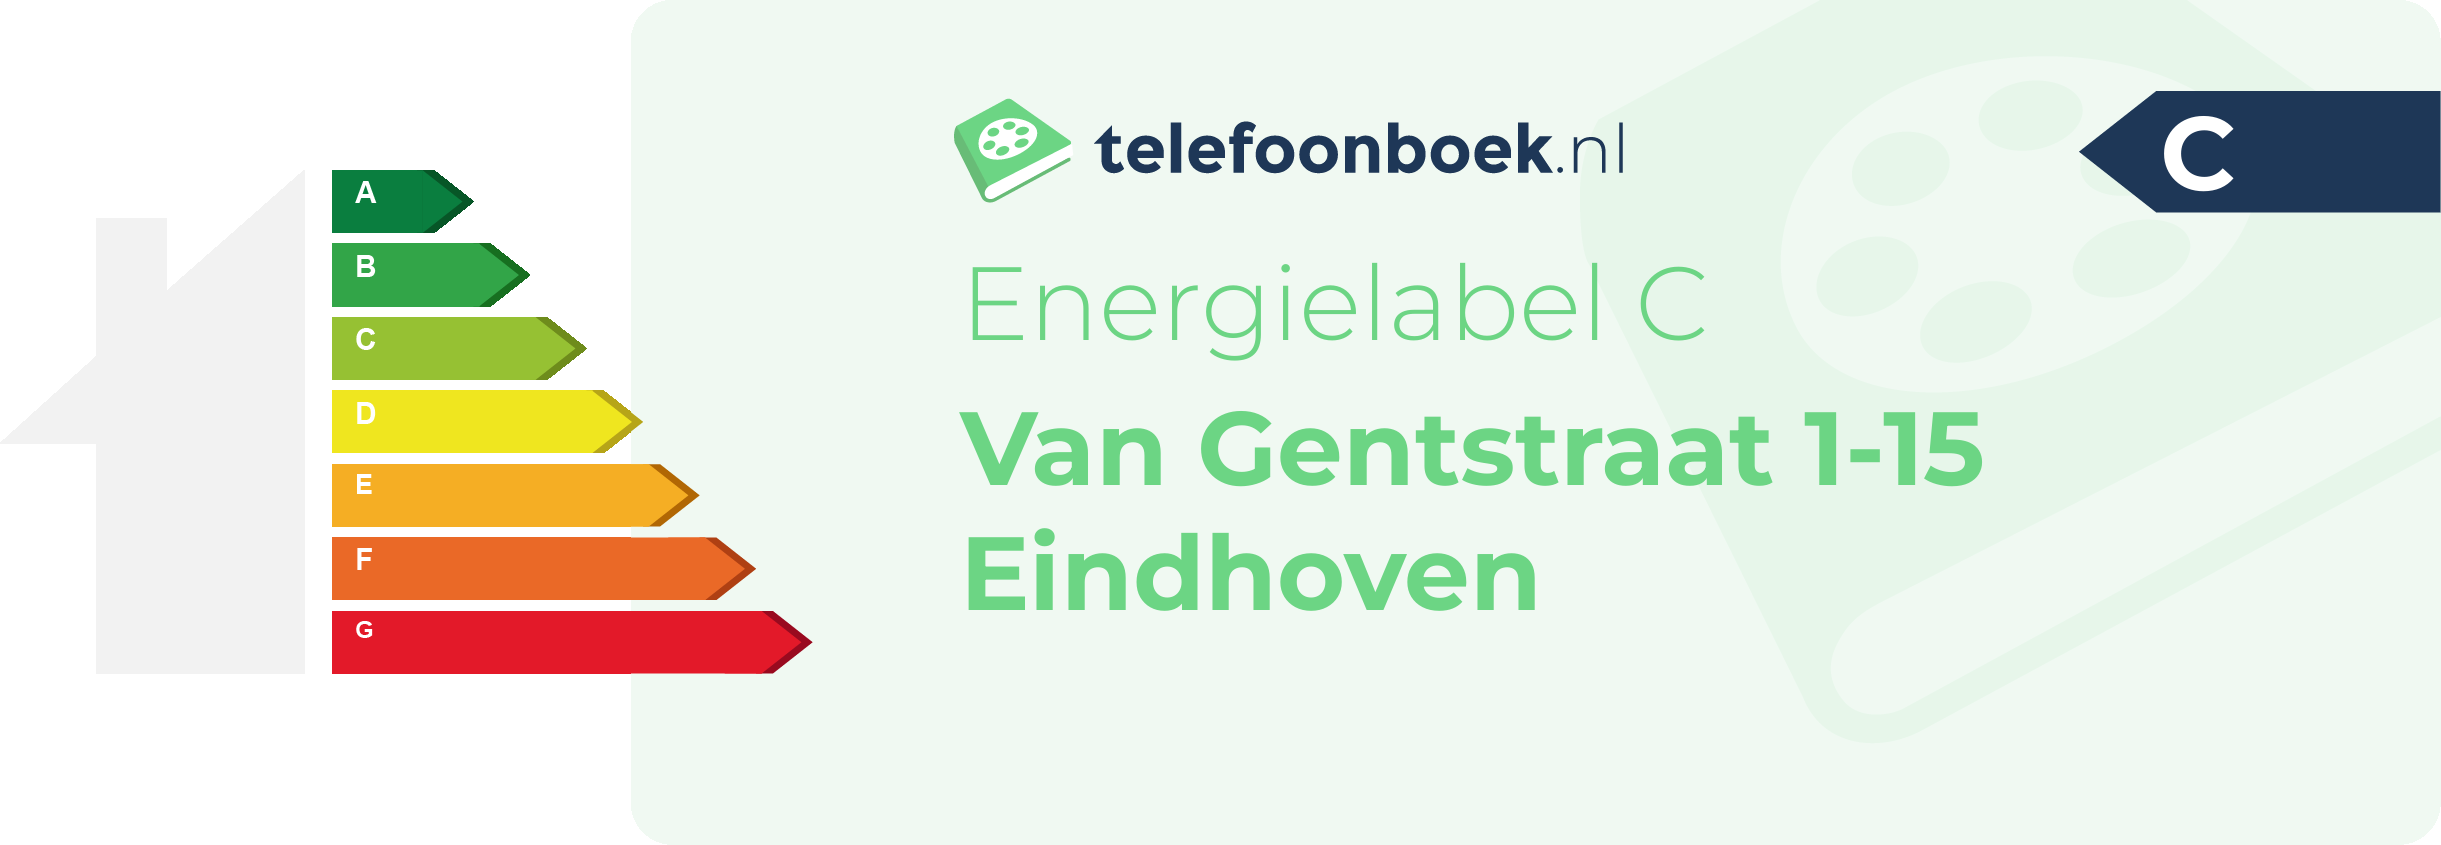 Energielabel Van Gentstraat 1-15 Eindhoven